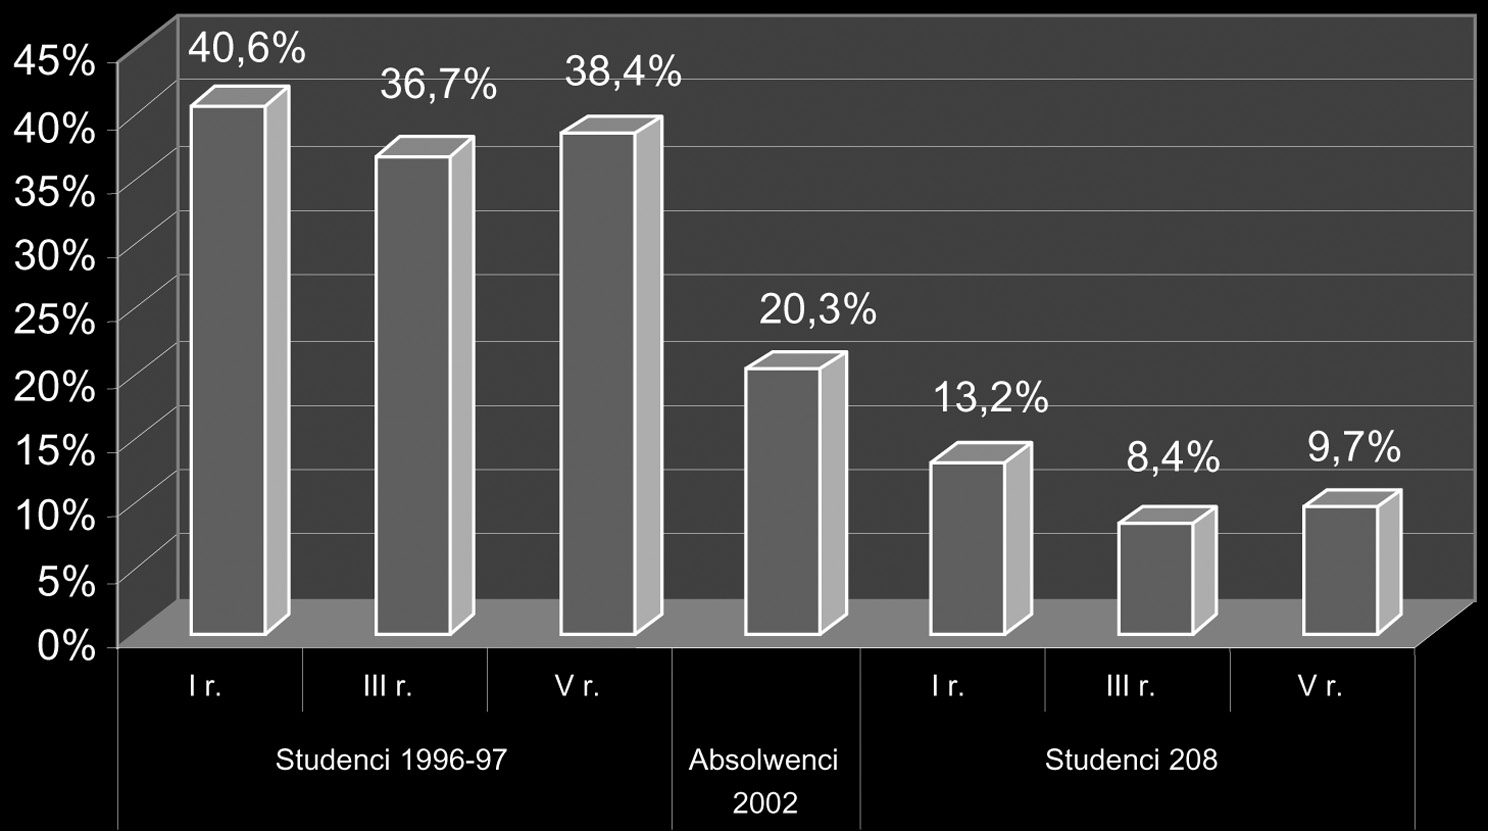 powiadomiłby o żądaniu łapówki odpowiedni organ. W badaniach z lat 90. tę ostatnią odpowiedź wskazało tylko 7,4% studentów I roku, 5,9% z roku III i zaledwie 0,7% z V roku.